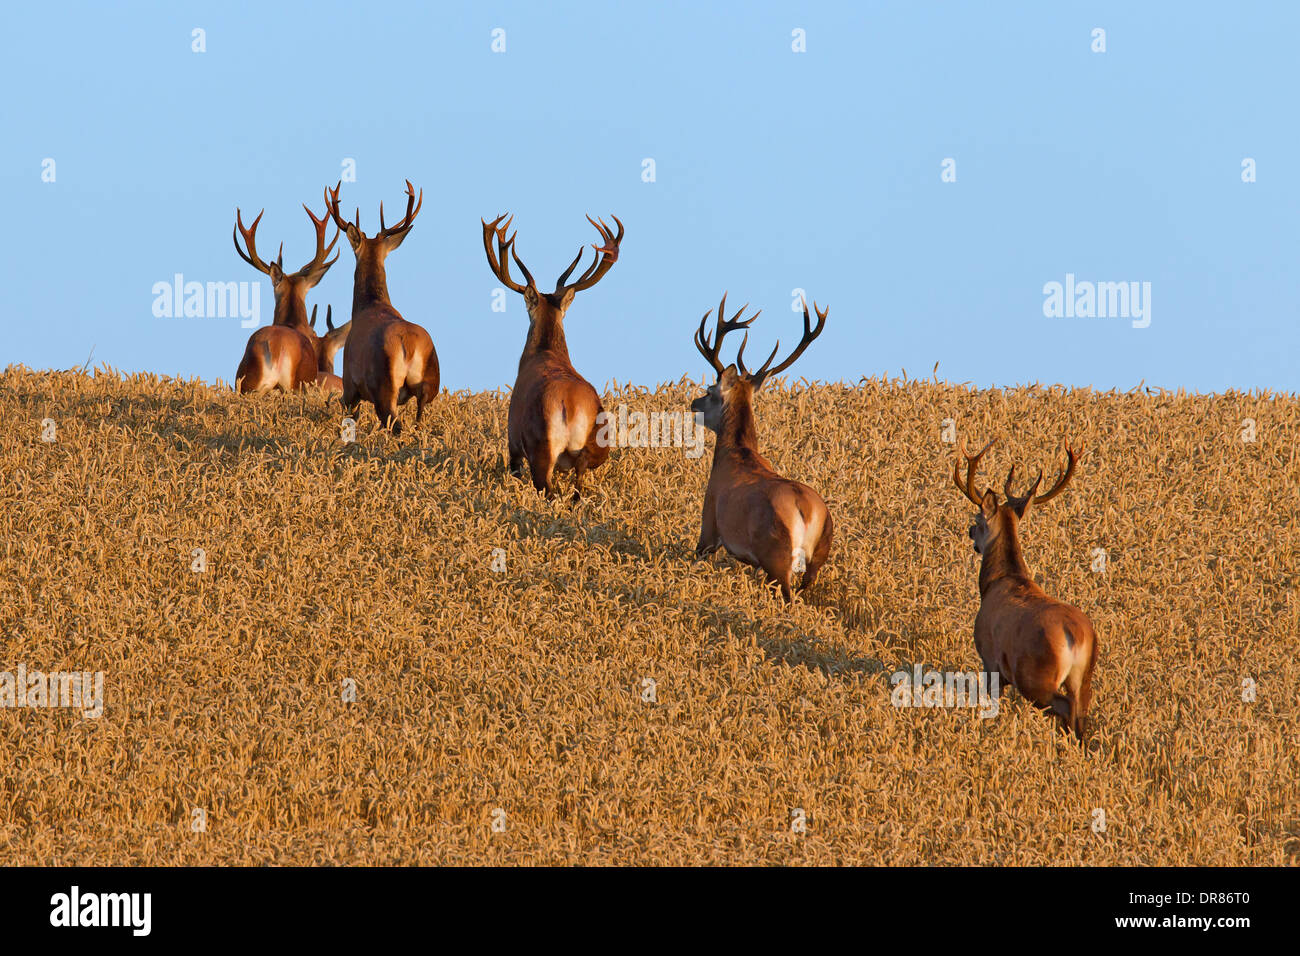 Allevamento di cervo (Cervus elaphus) cervi attraversando Campo di grano / cornfield in estate Foto Stock